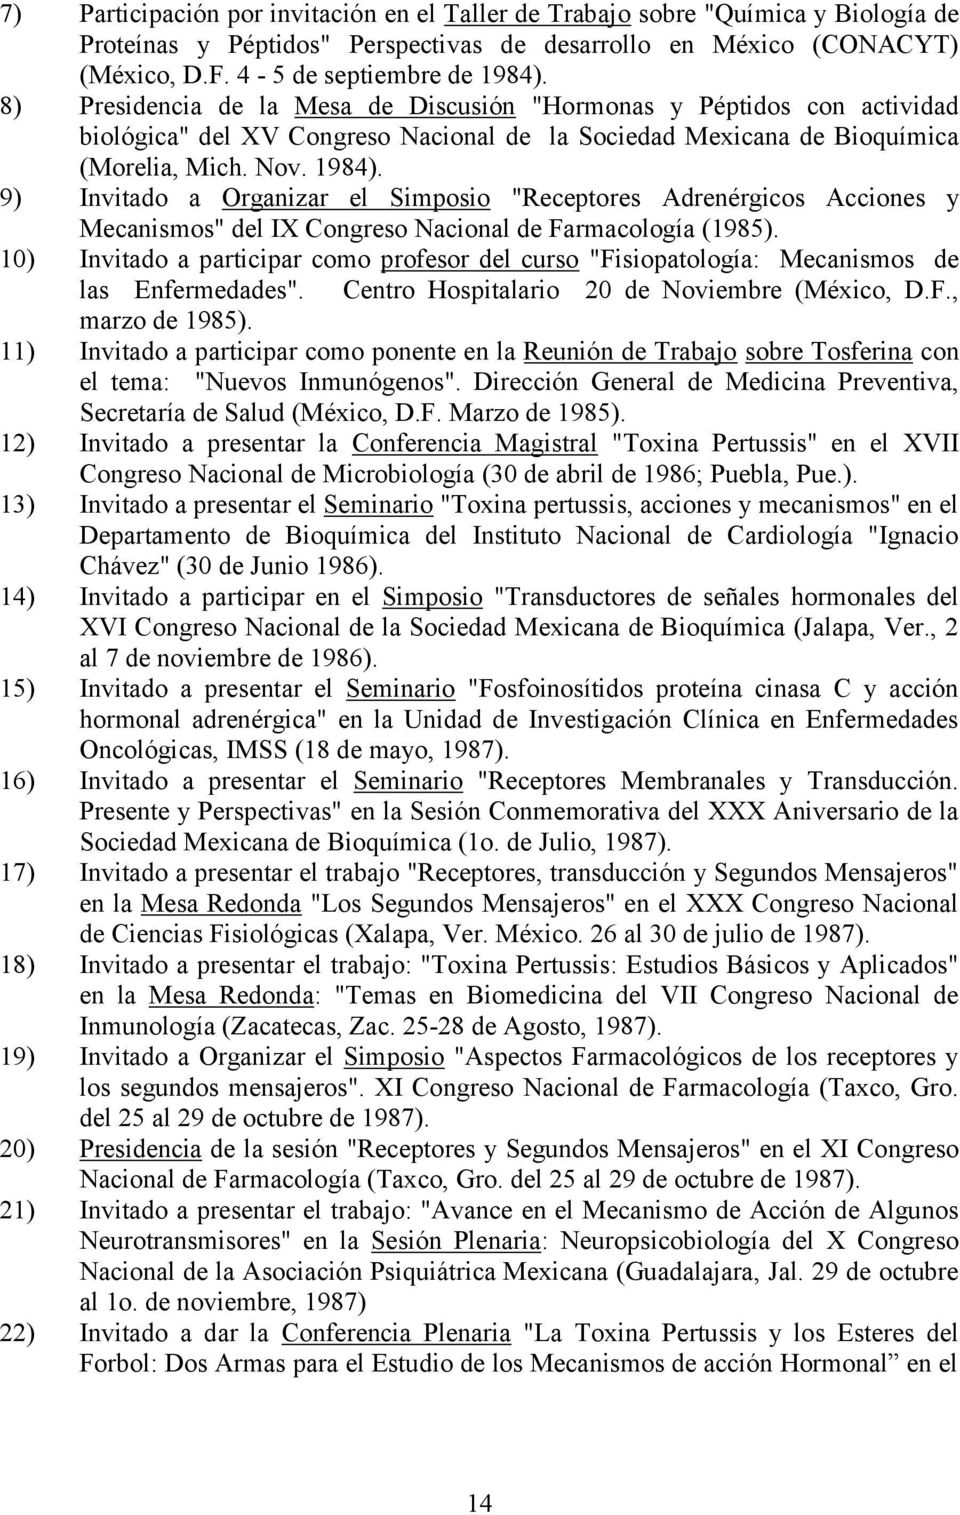 9) Invitado a Organizar el Simposio "Receptores Adrenérgicos Acciones y Mecanismos" del IX Congreso Nacional de Farmacología (1985).